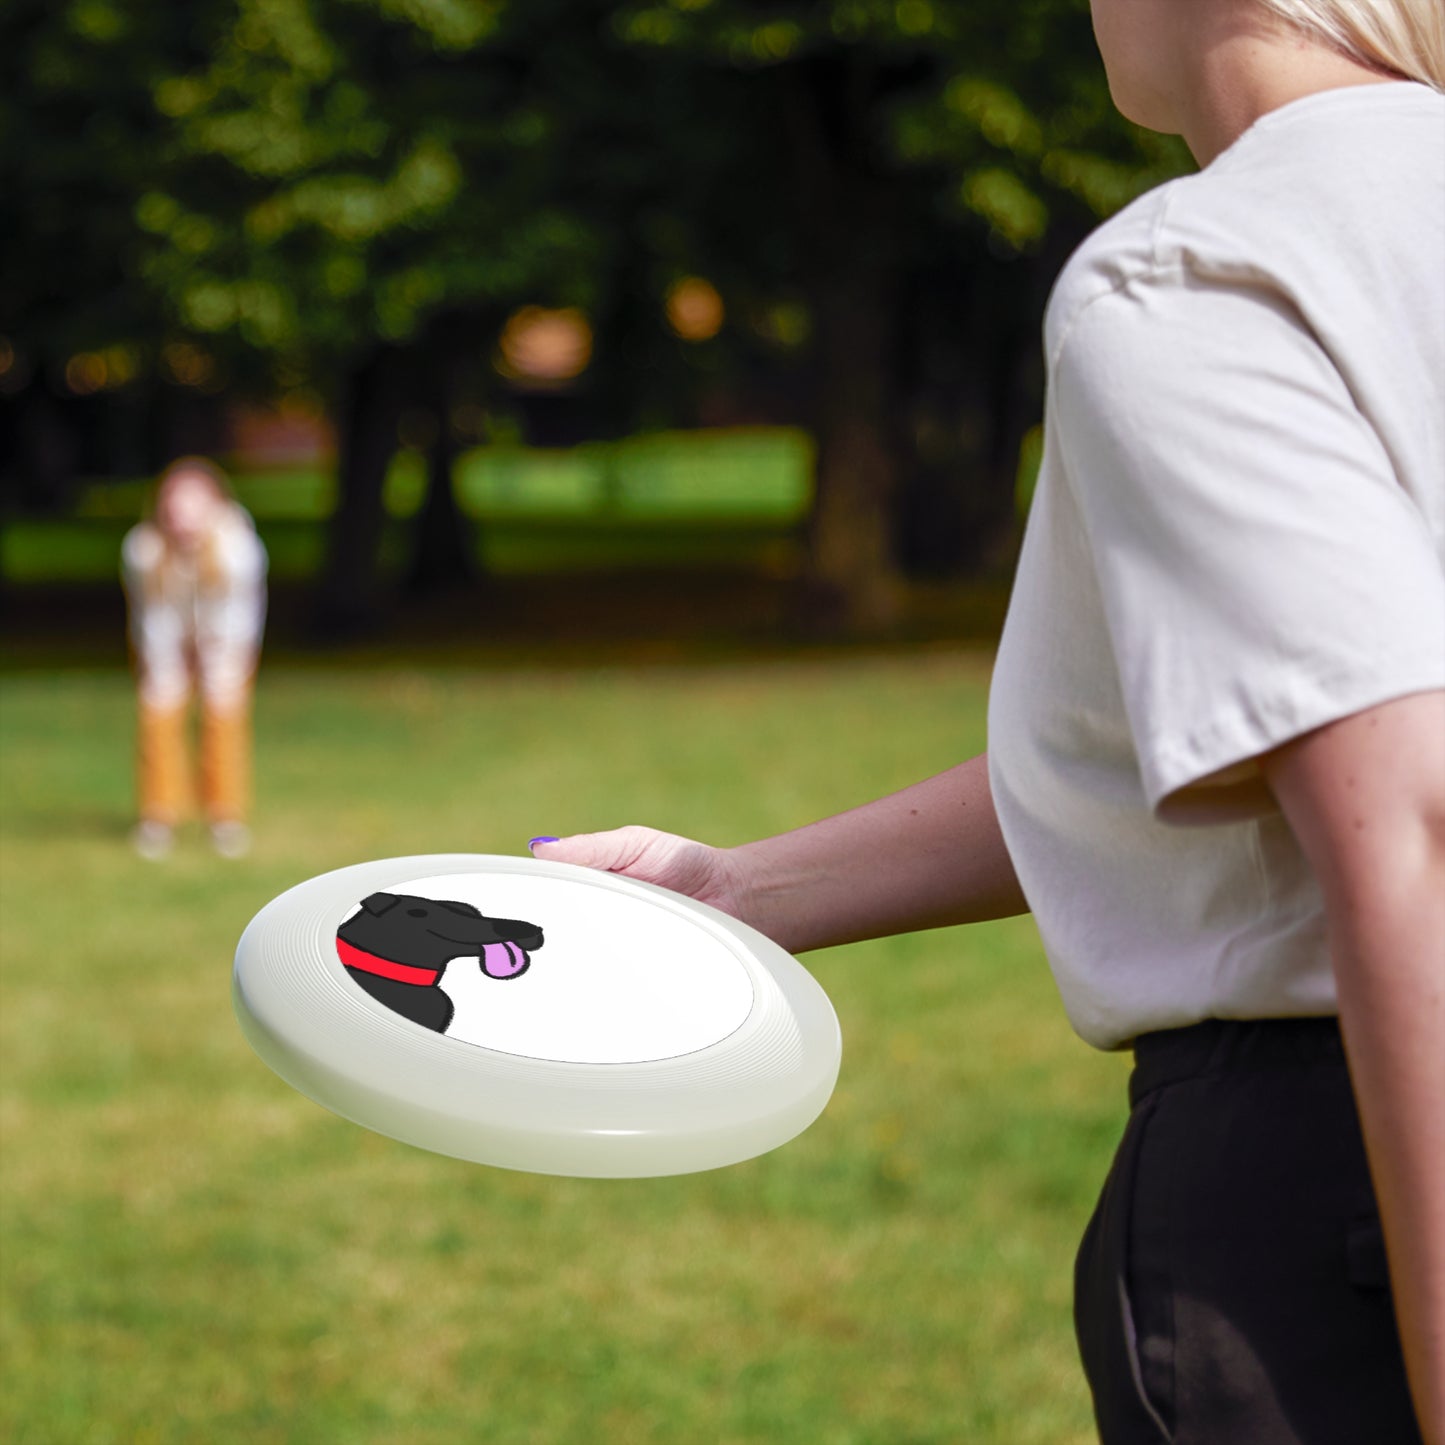 Wham-O Frisbee